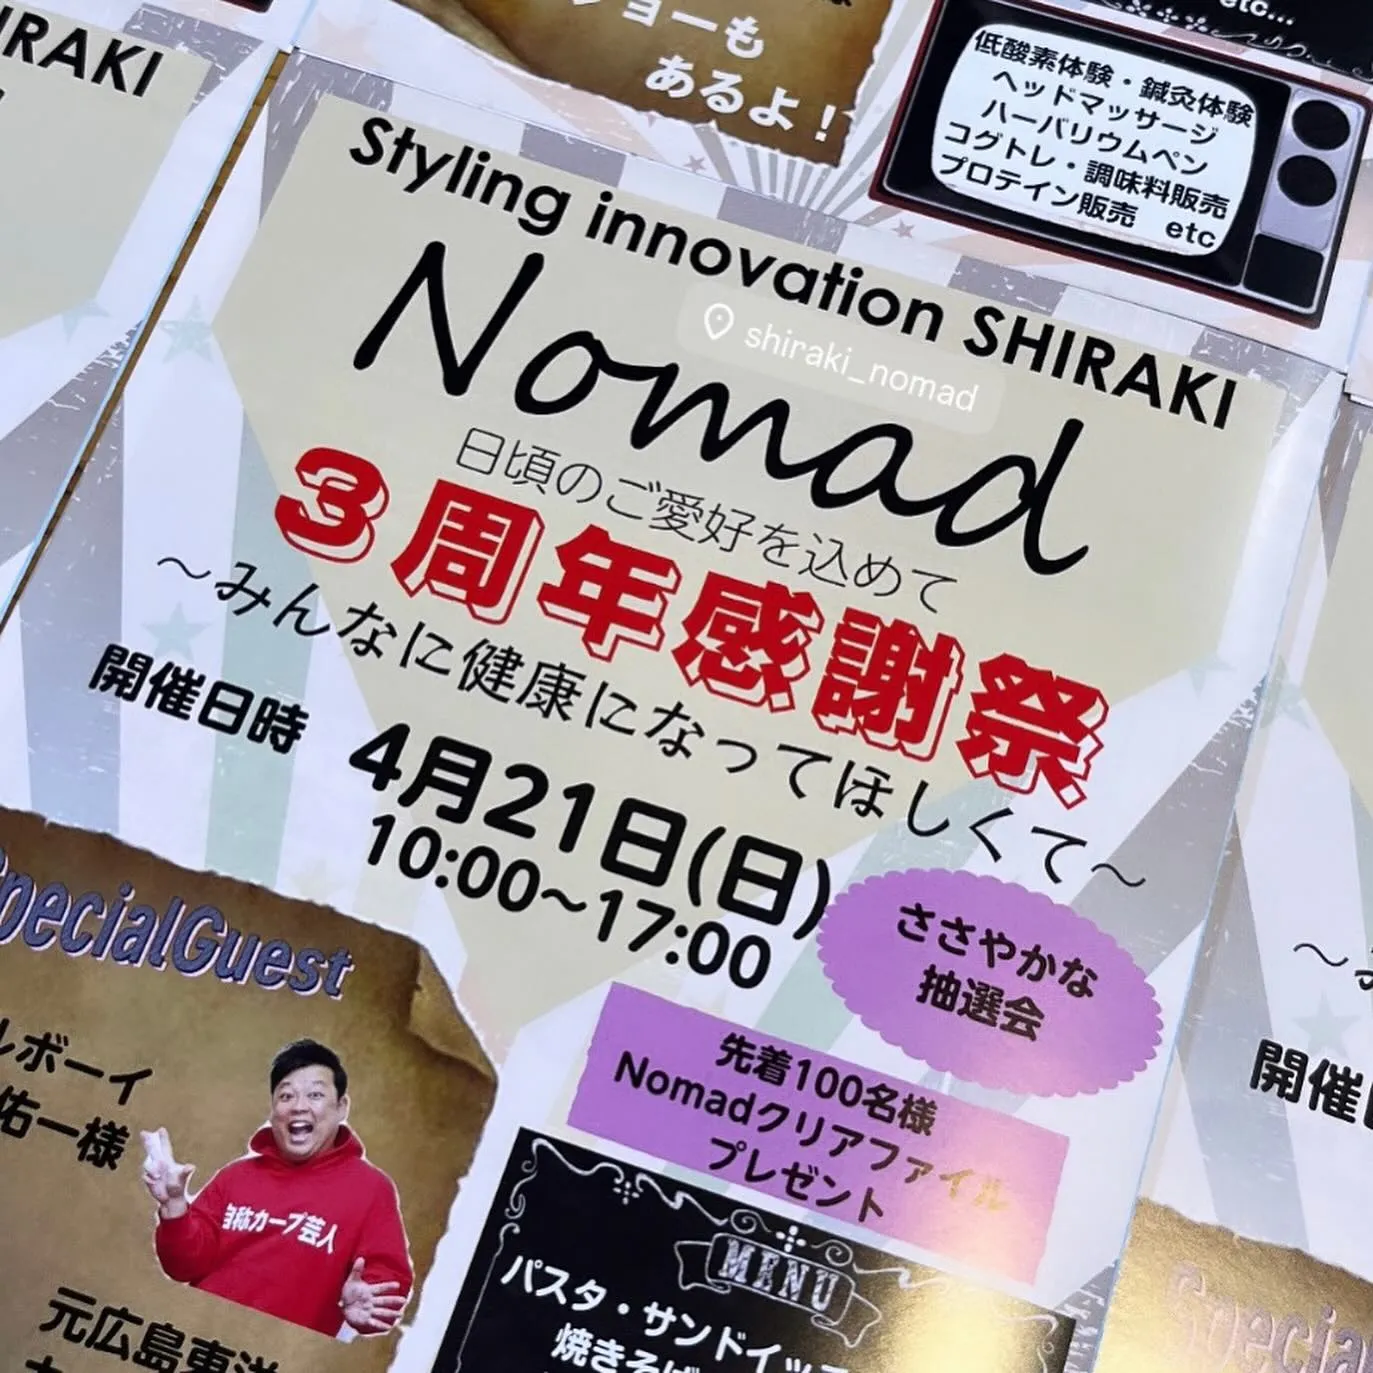 SHIRAKI Nomad３周年㊗感謝祭！